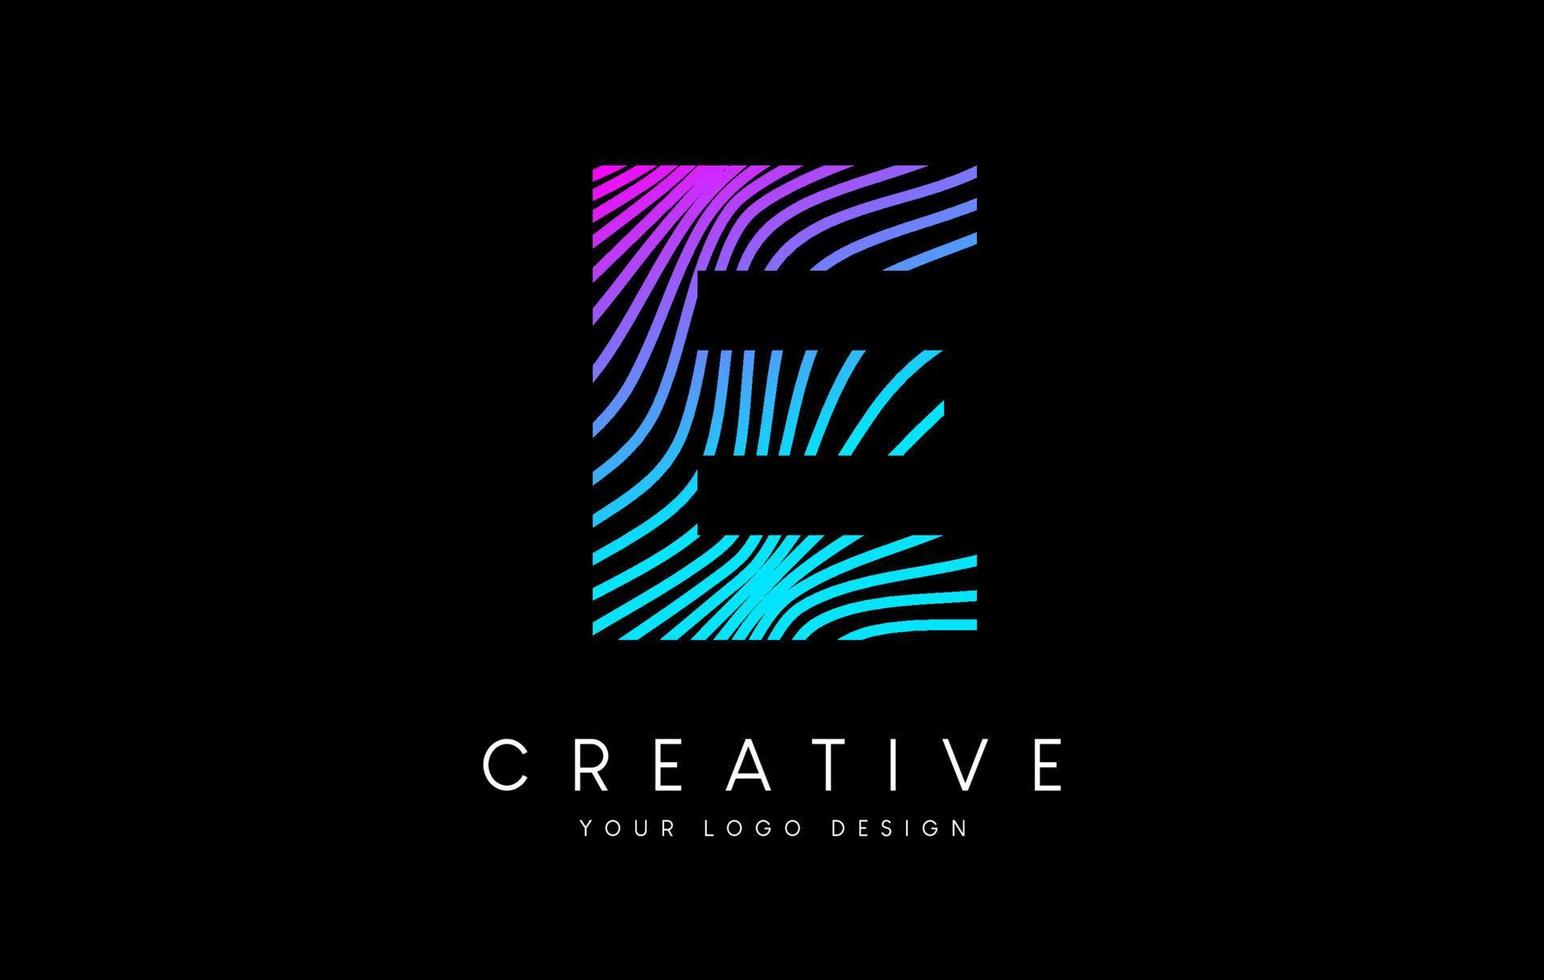 Warp Zebra Lines Letter E logo Design with Neon Purple Lines and Creative Icon Vector